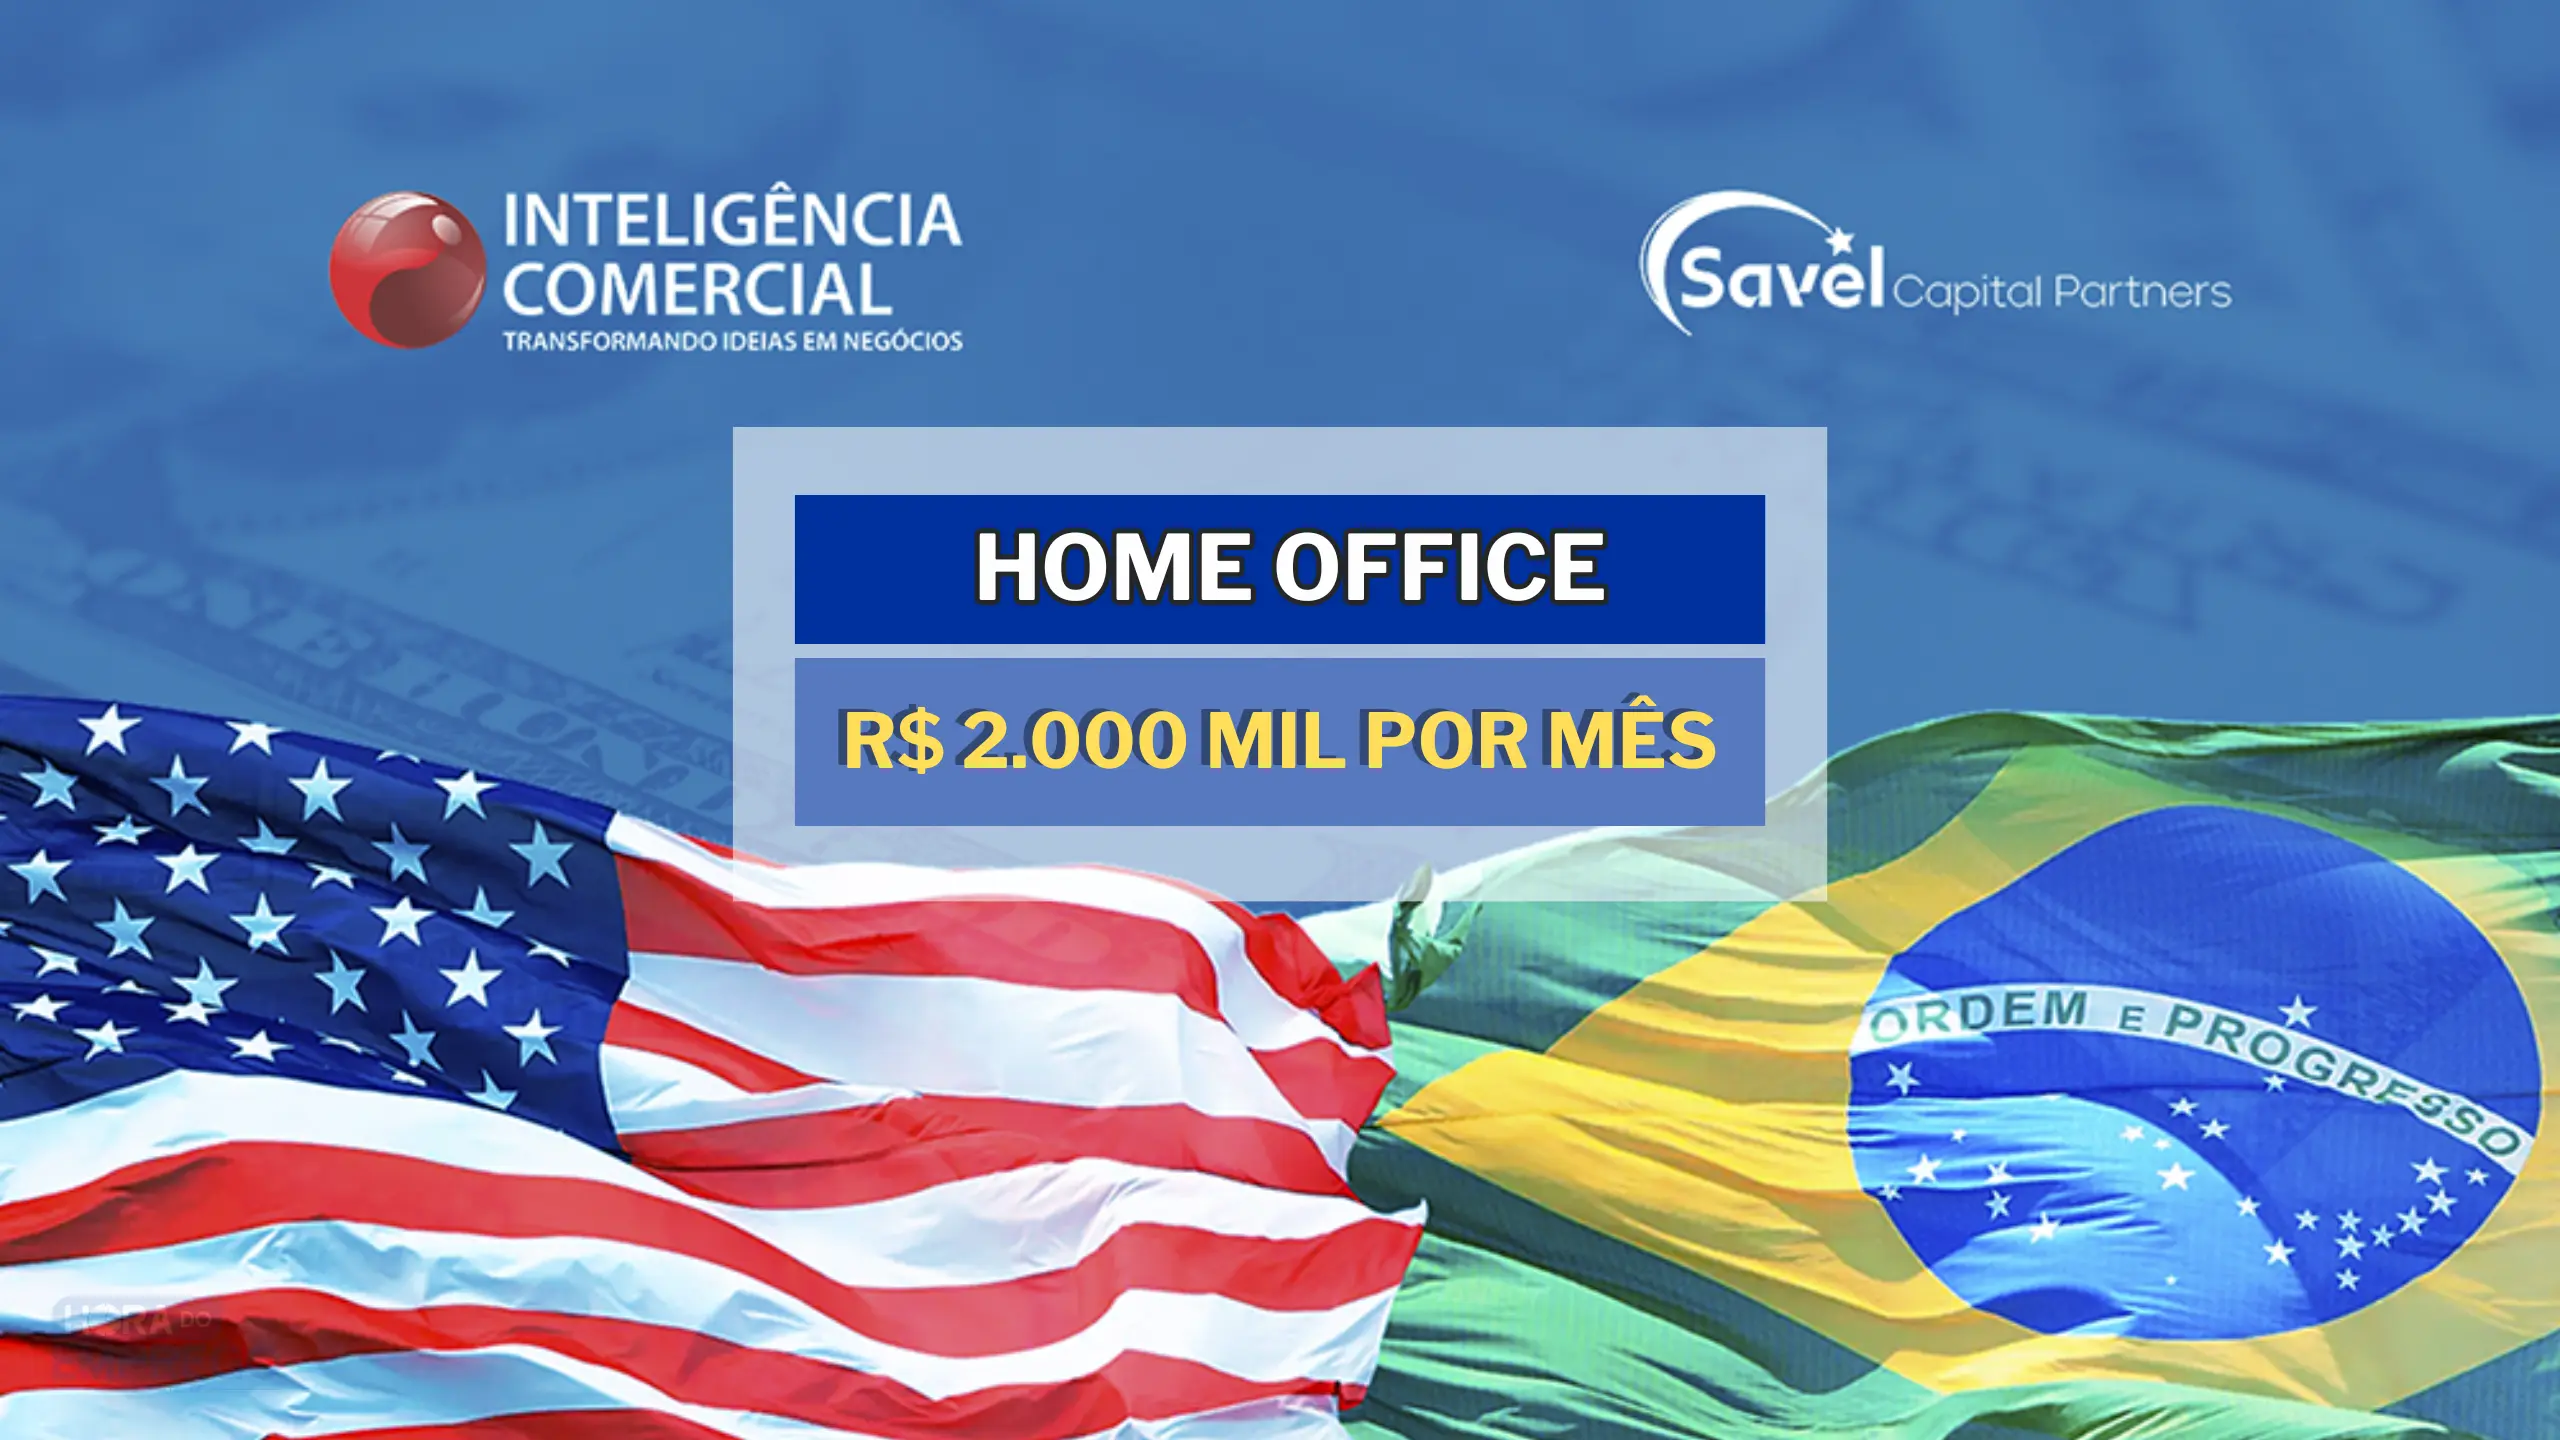 Home Office: Inteligência Comercial contrata para TRABALHAR DE CASA com salário de R$ 2.000,00 MIL no setor de Social Media